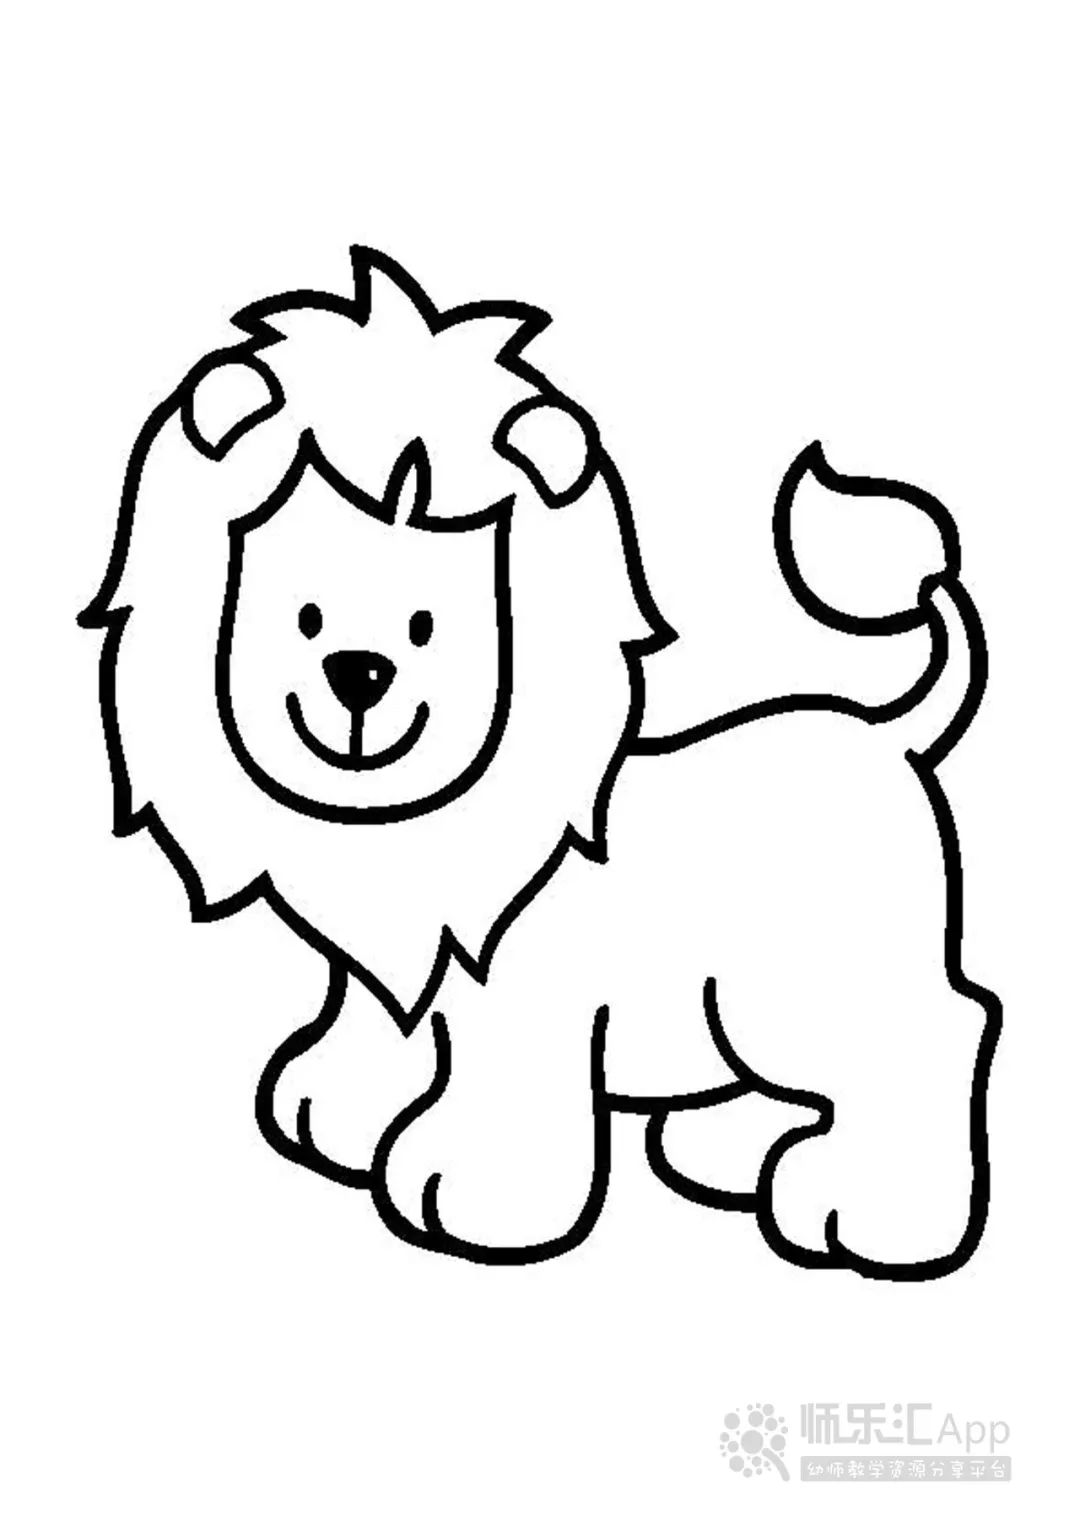 教你画犀牛儿童科普简笔画_王老猫动物视频